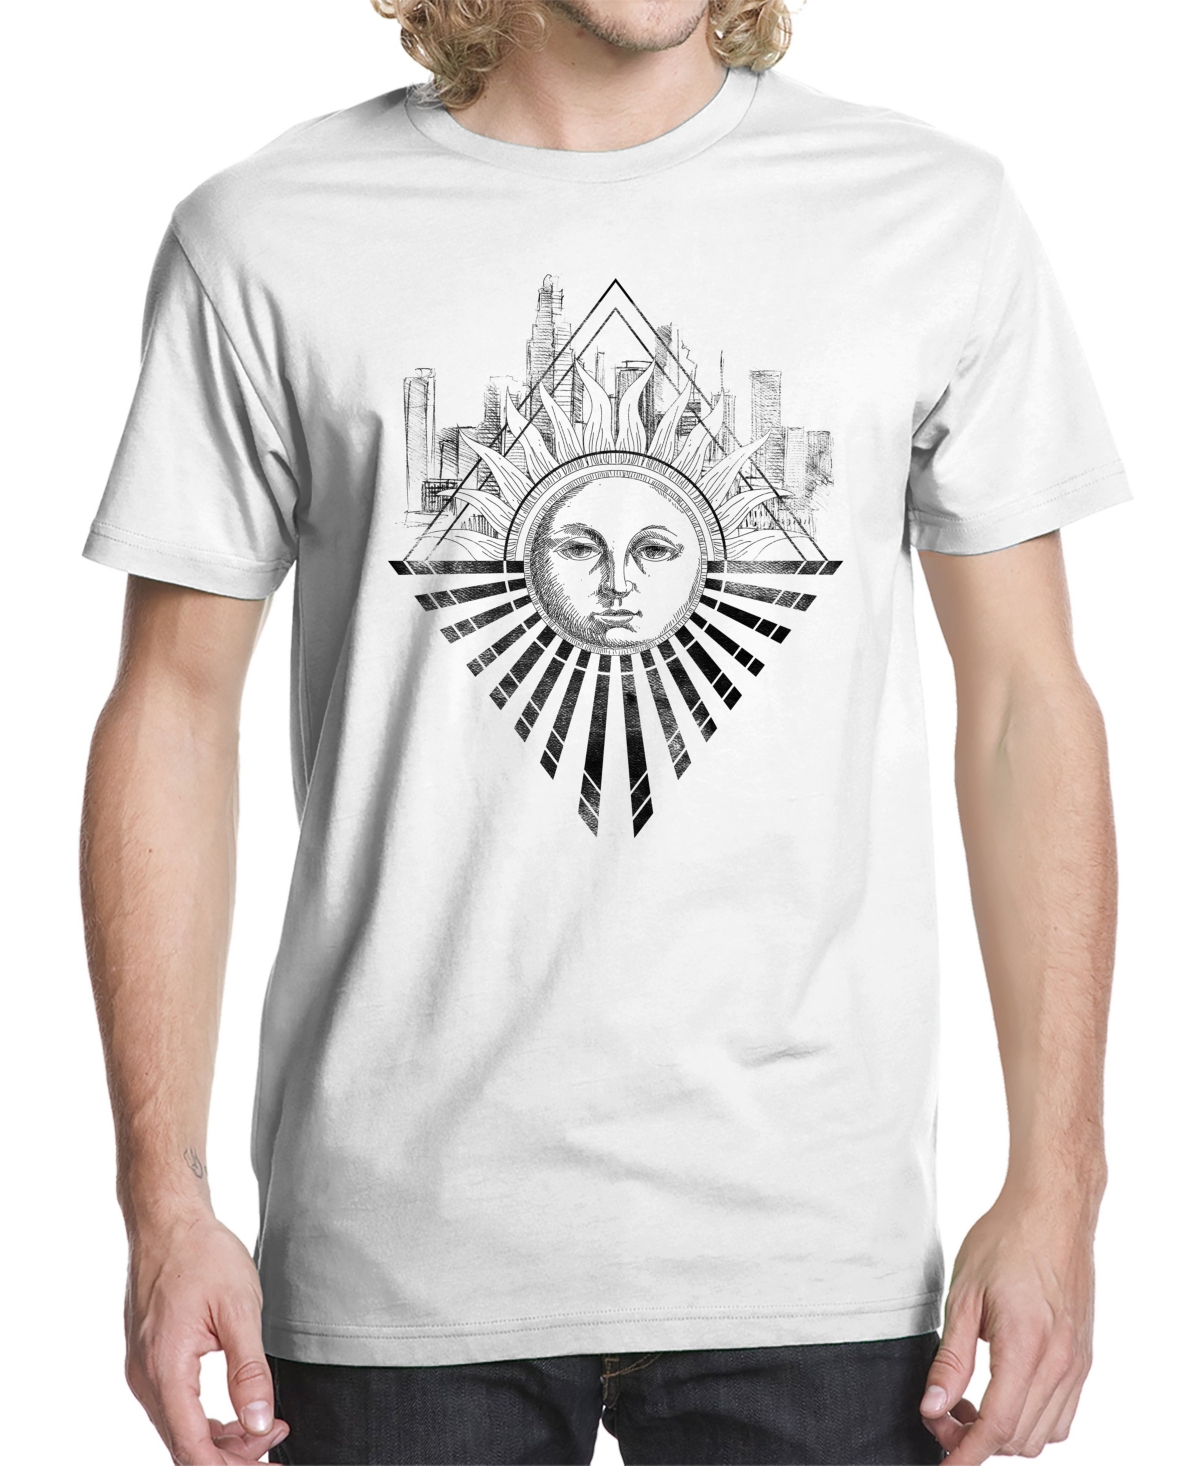 Men's Sunburst Graphic T-shirt - White